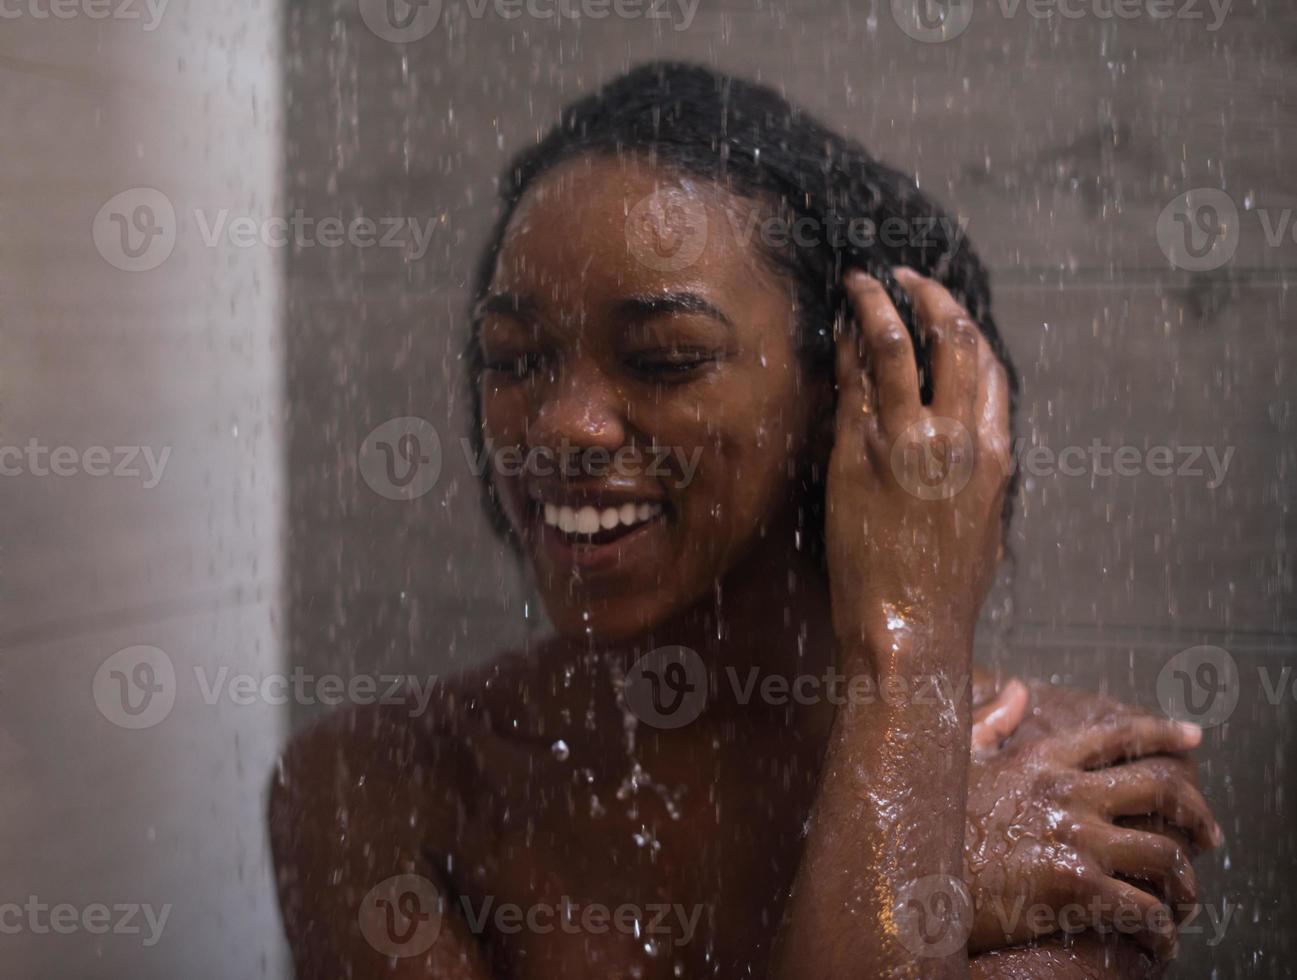 donna afroamericana sotto la doccia foto